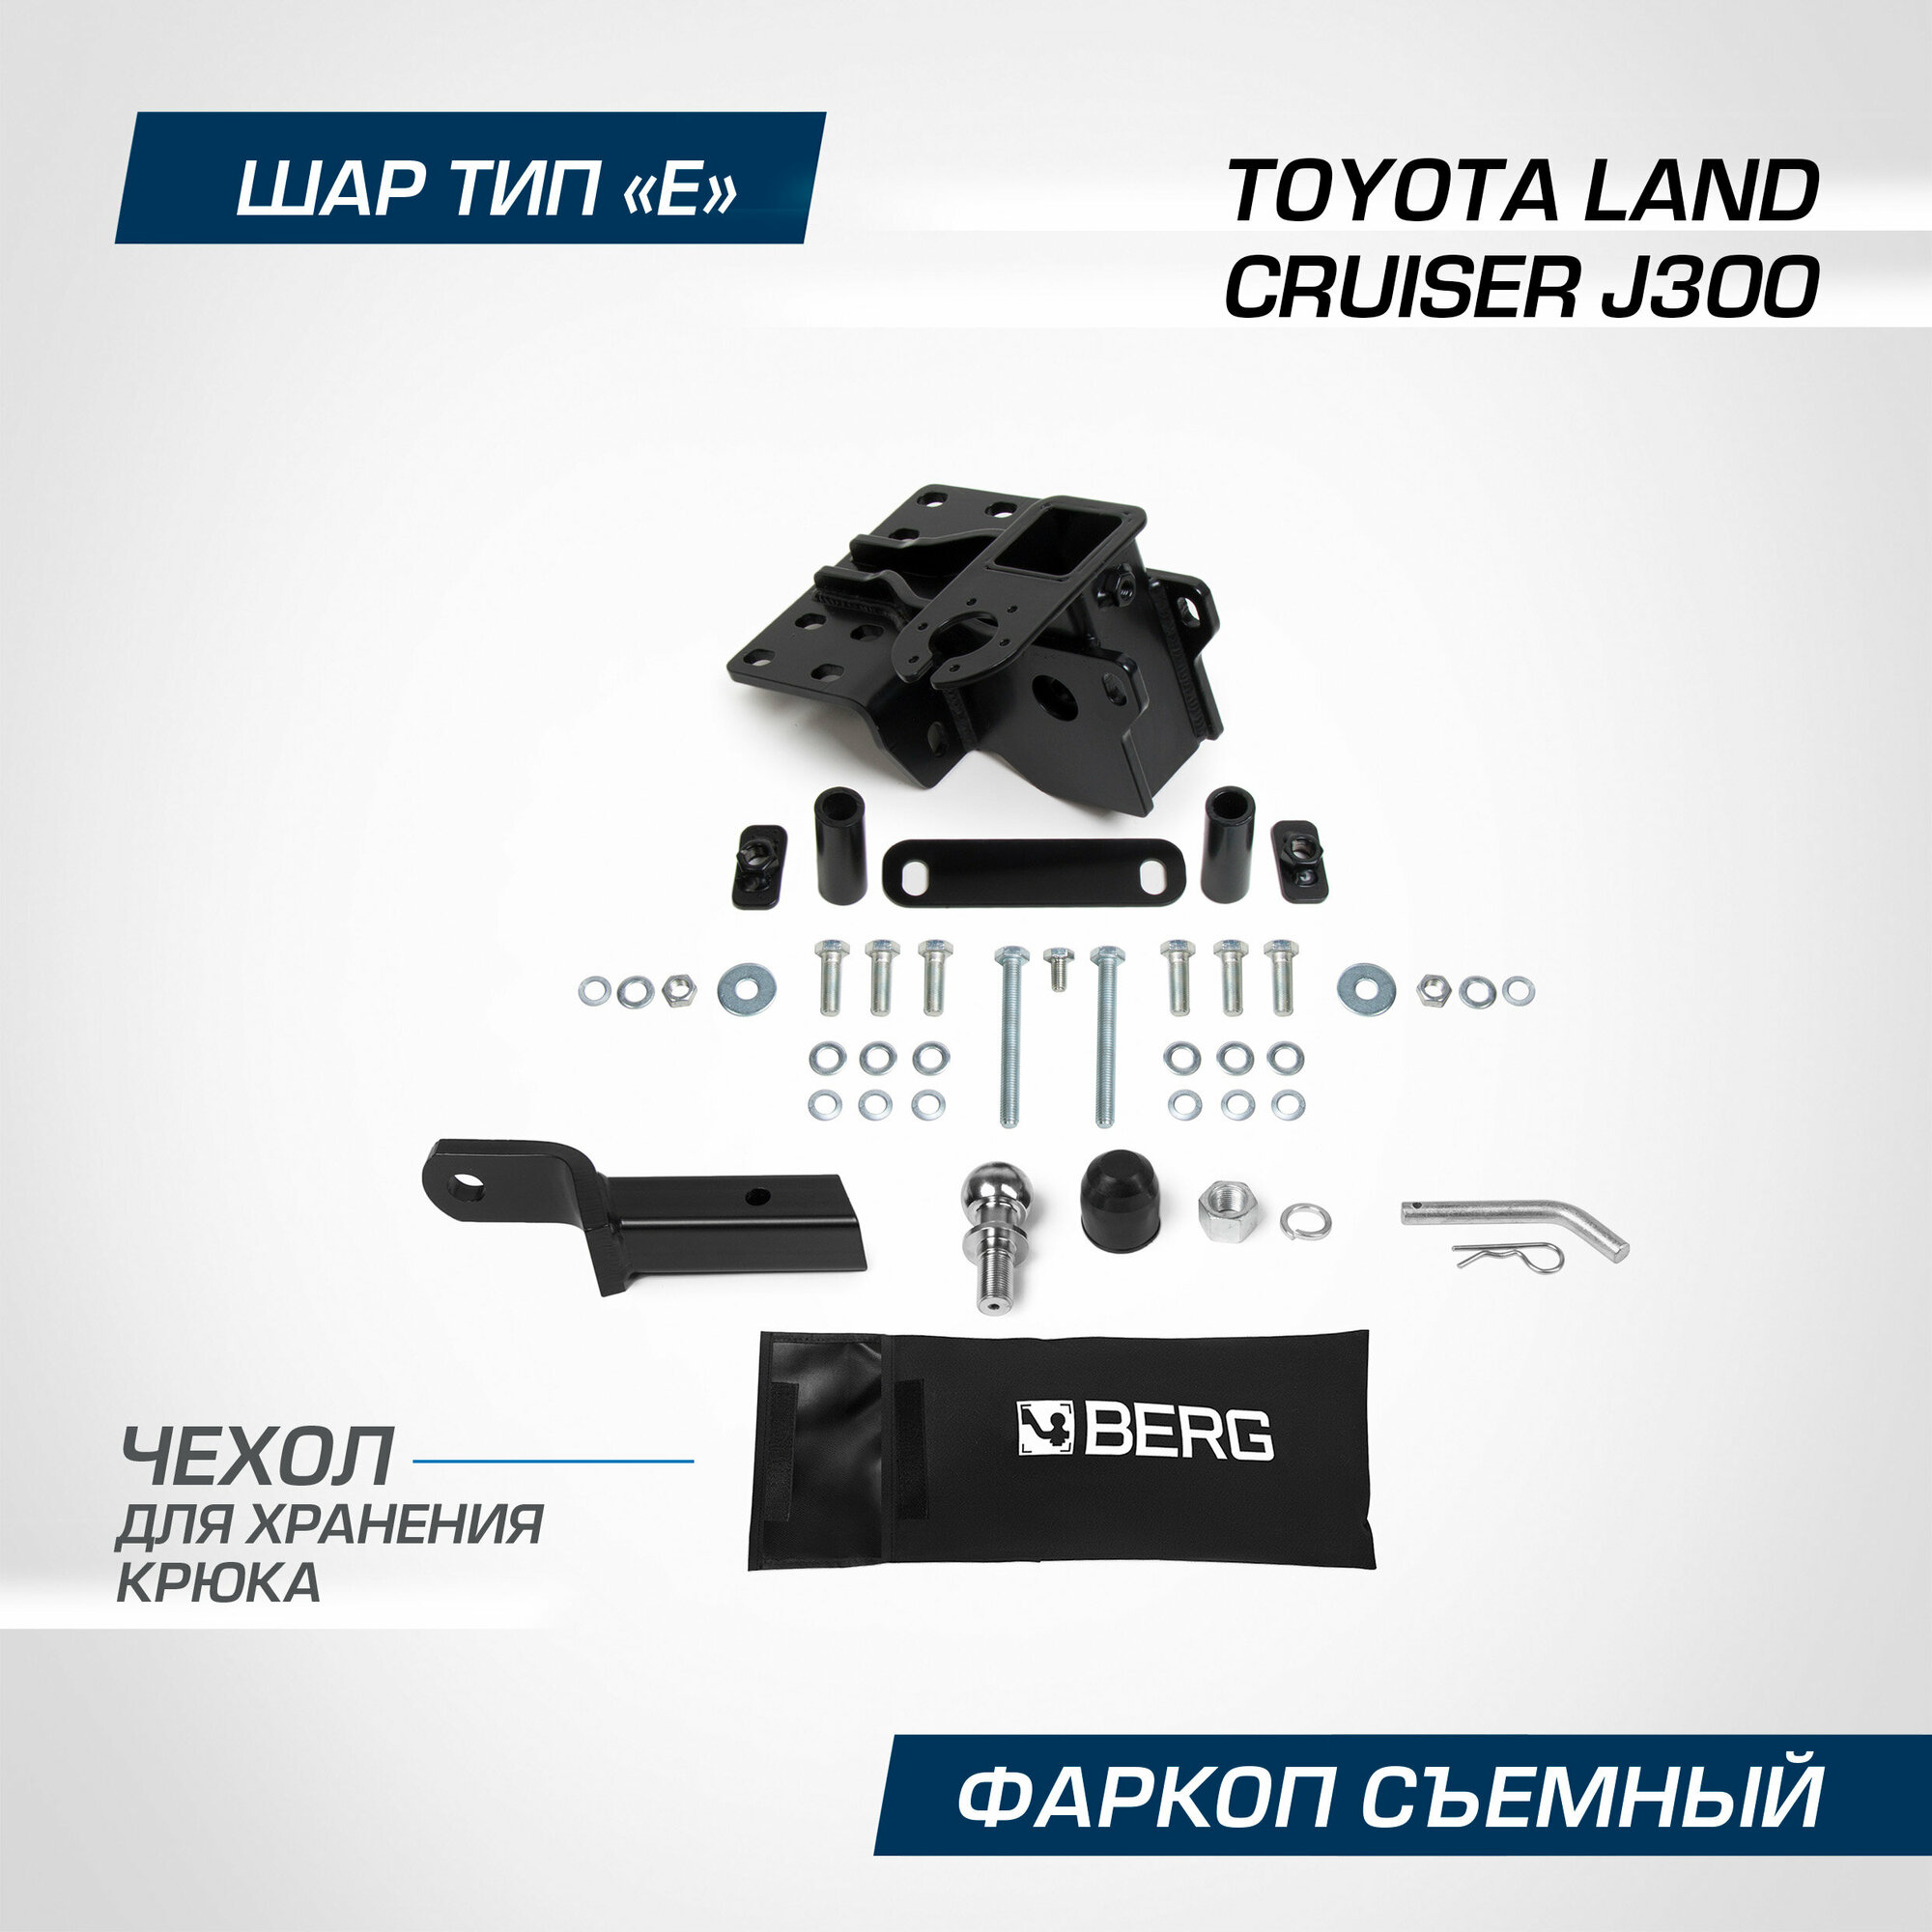 Фаркоп под квадрат Berg для Toyota Land Cruiser (Тойота Ленд Крузер) 300 2021-н. в шар E 3500/120 кг F.5716.001